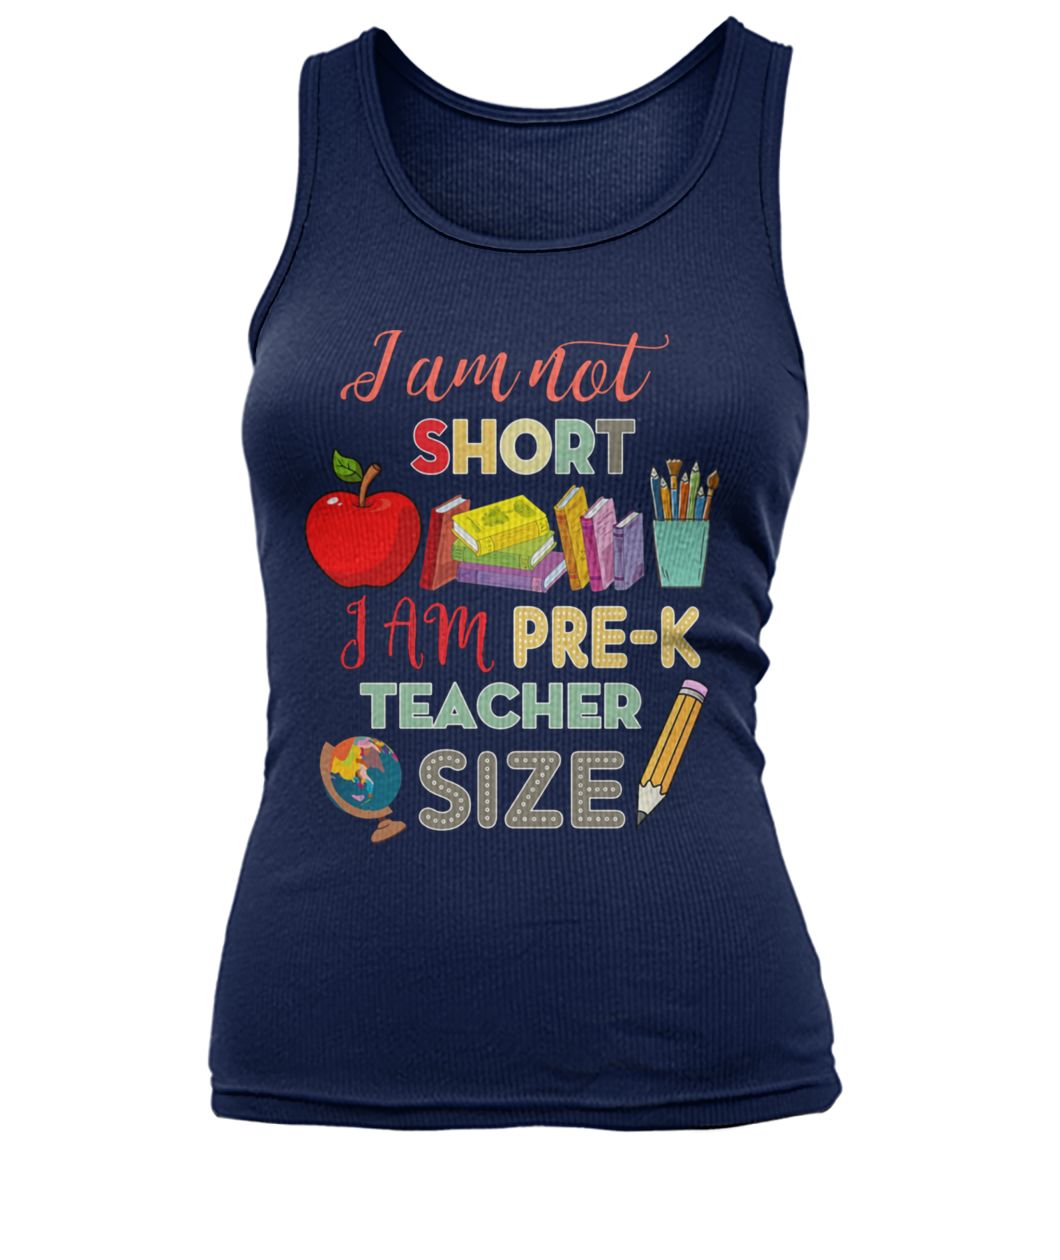 I am not short I am pre-k teacher size women's tank top